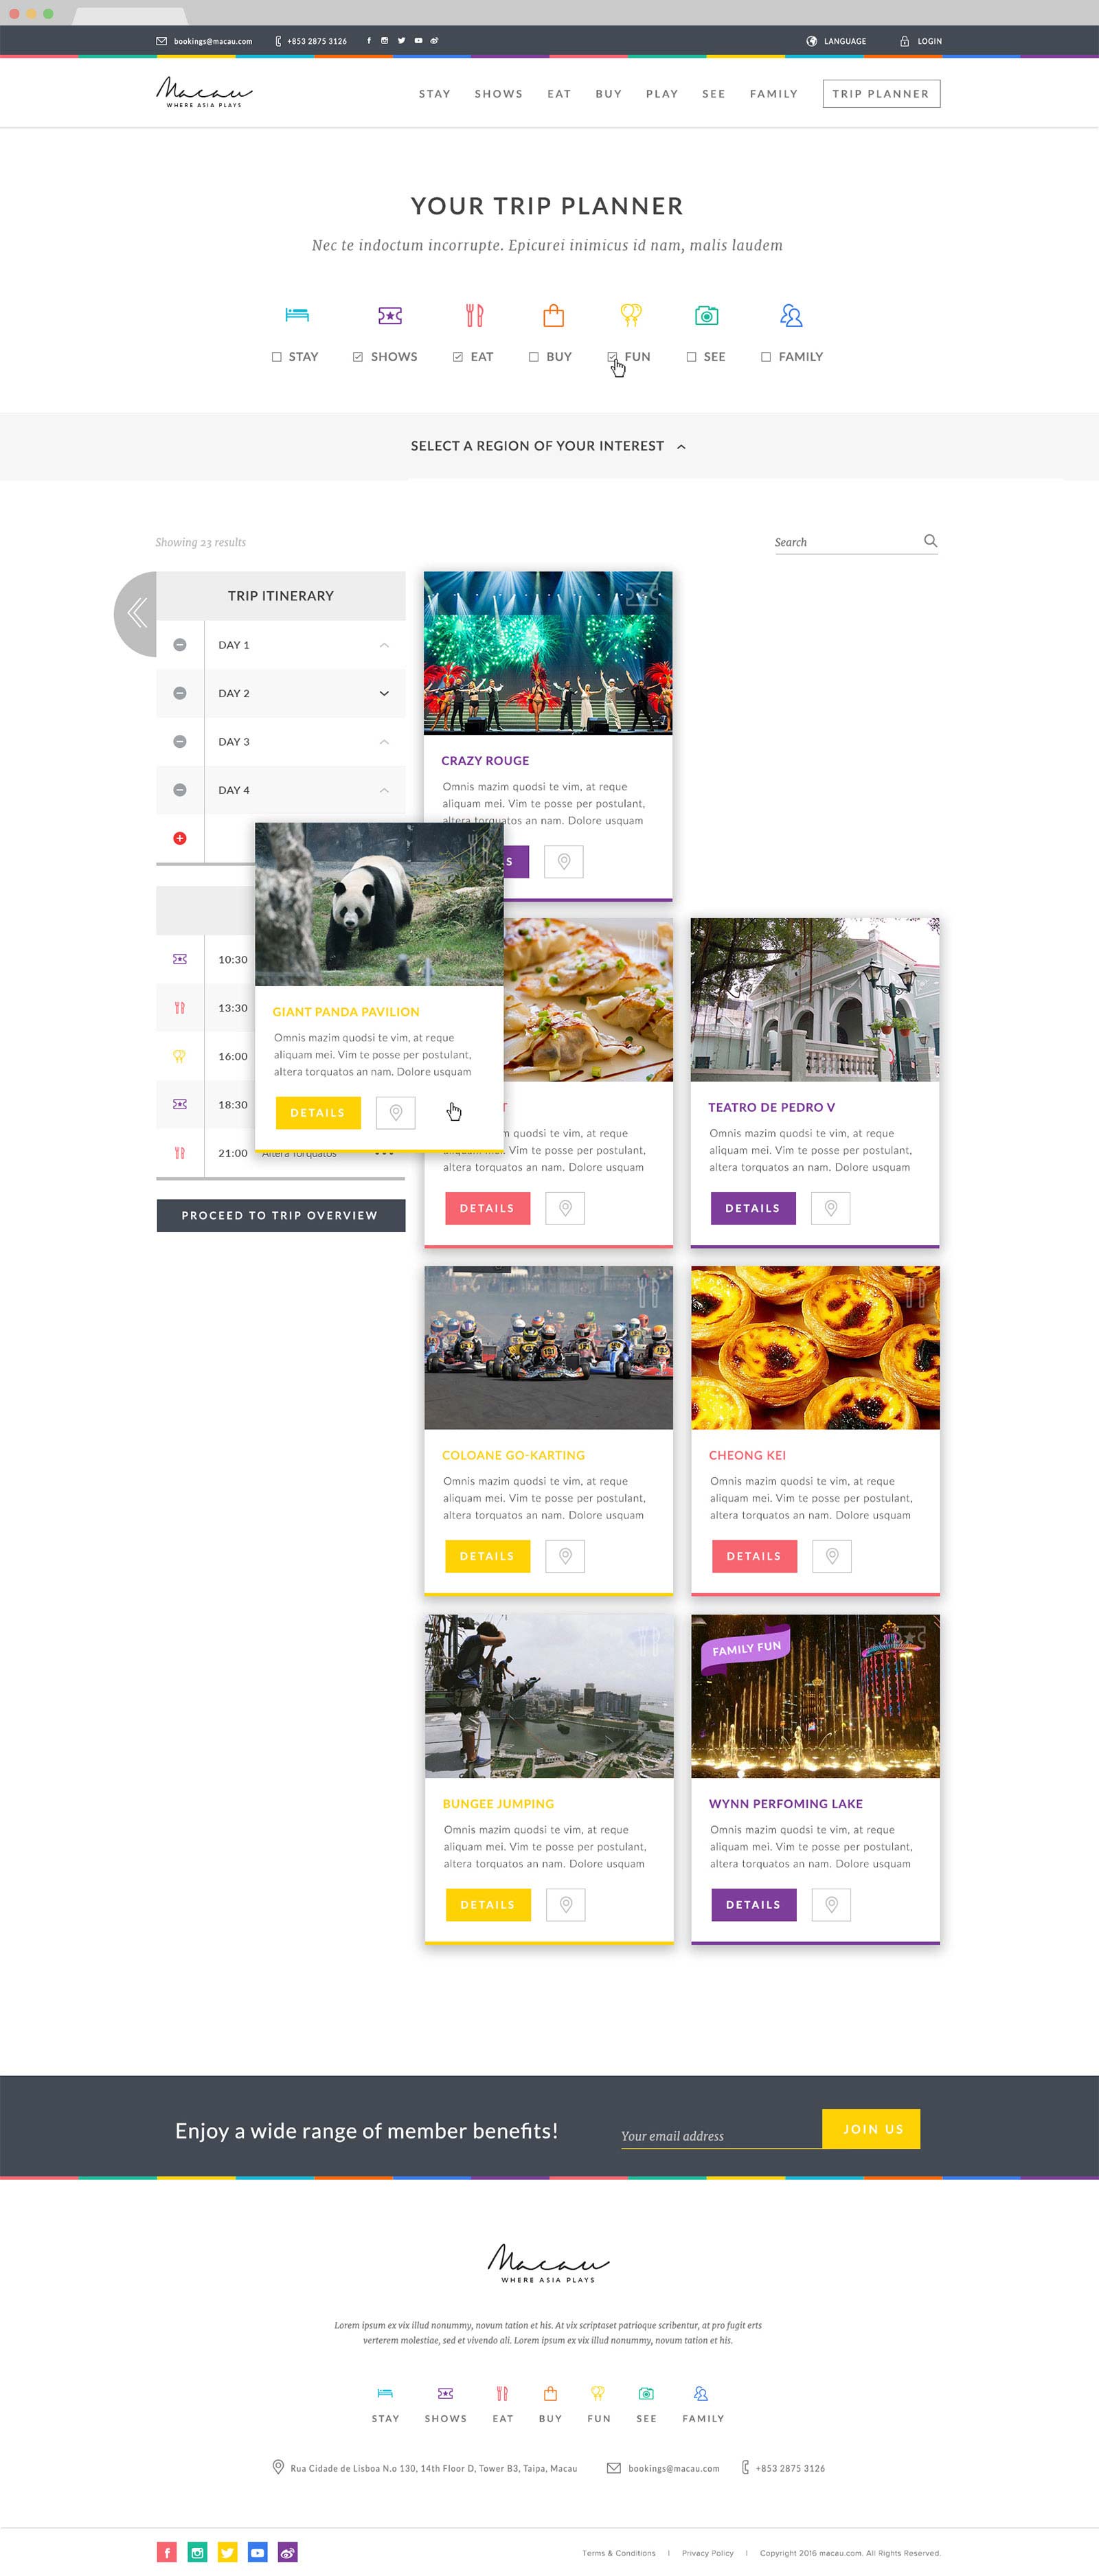 web design singapore macau.com 03 - Macau.com